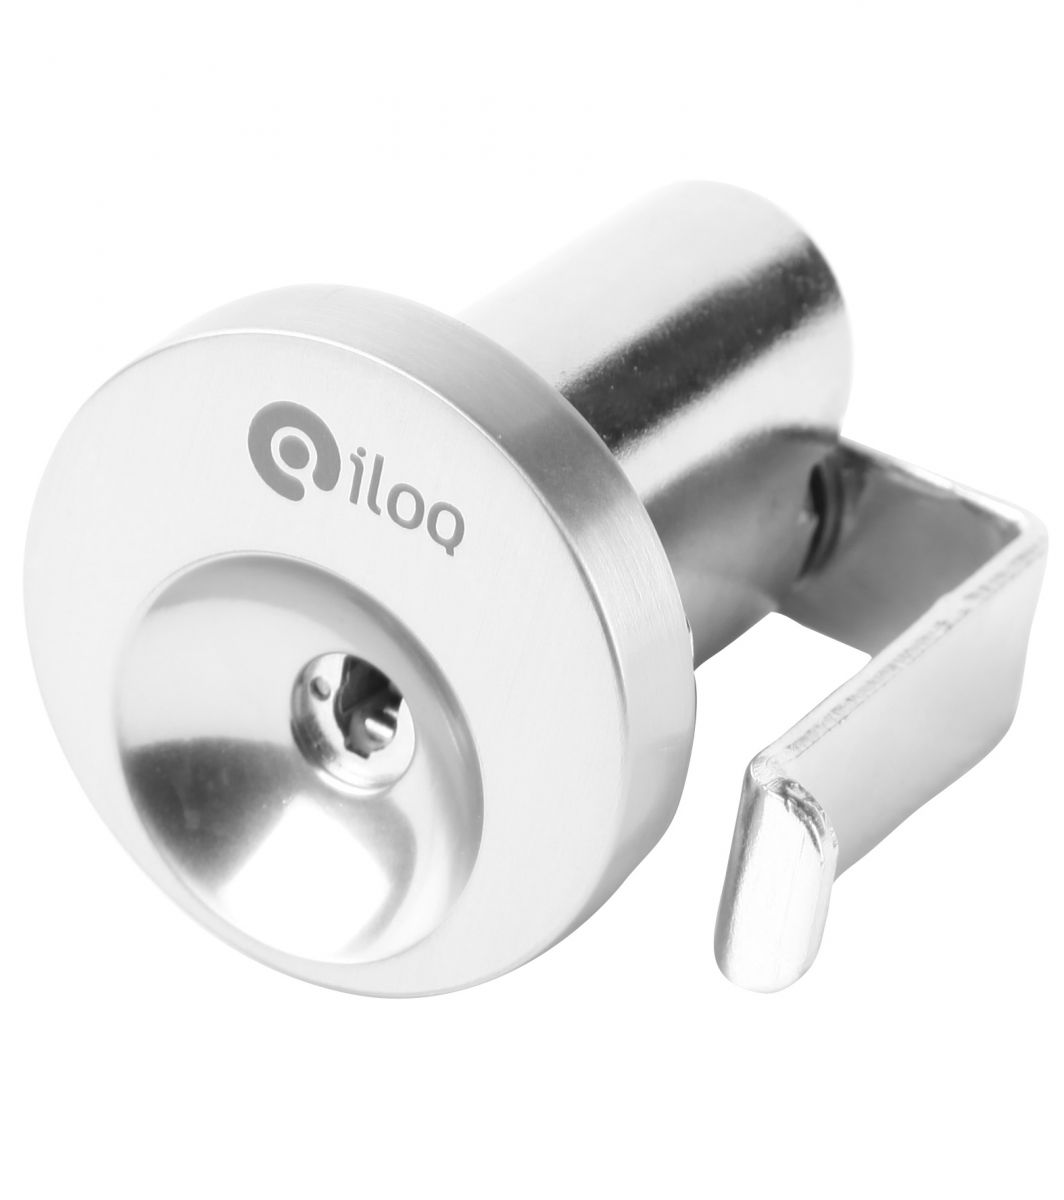 iloq s10 furniture lock